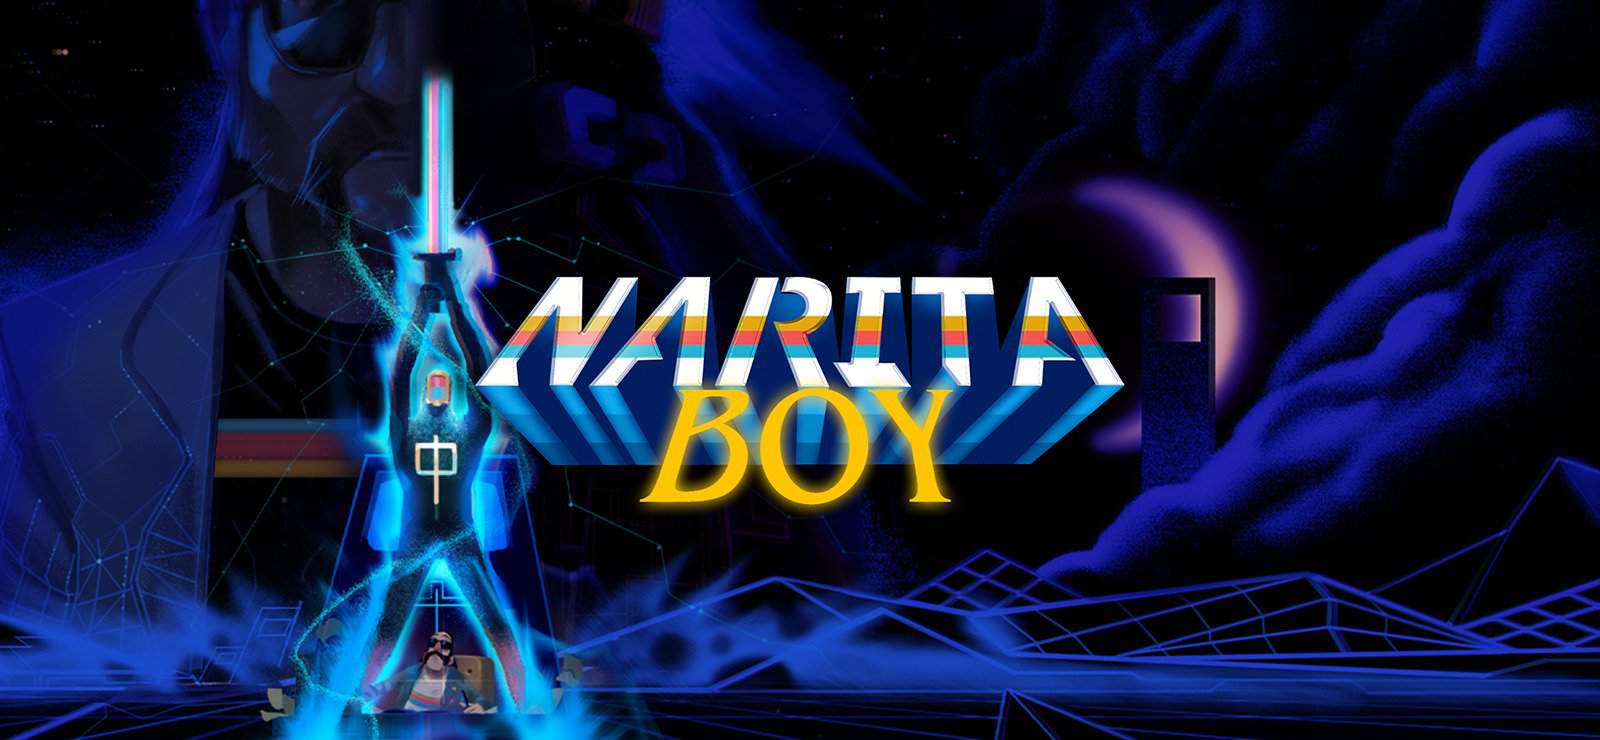 Narita Boy Review